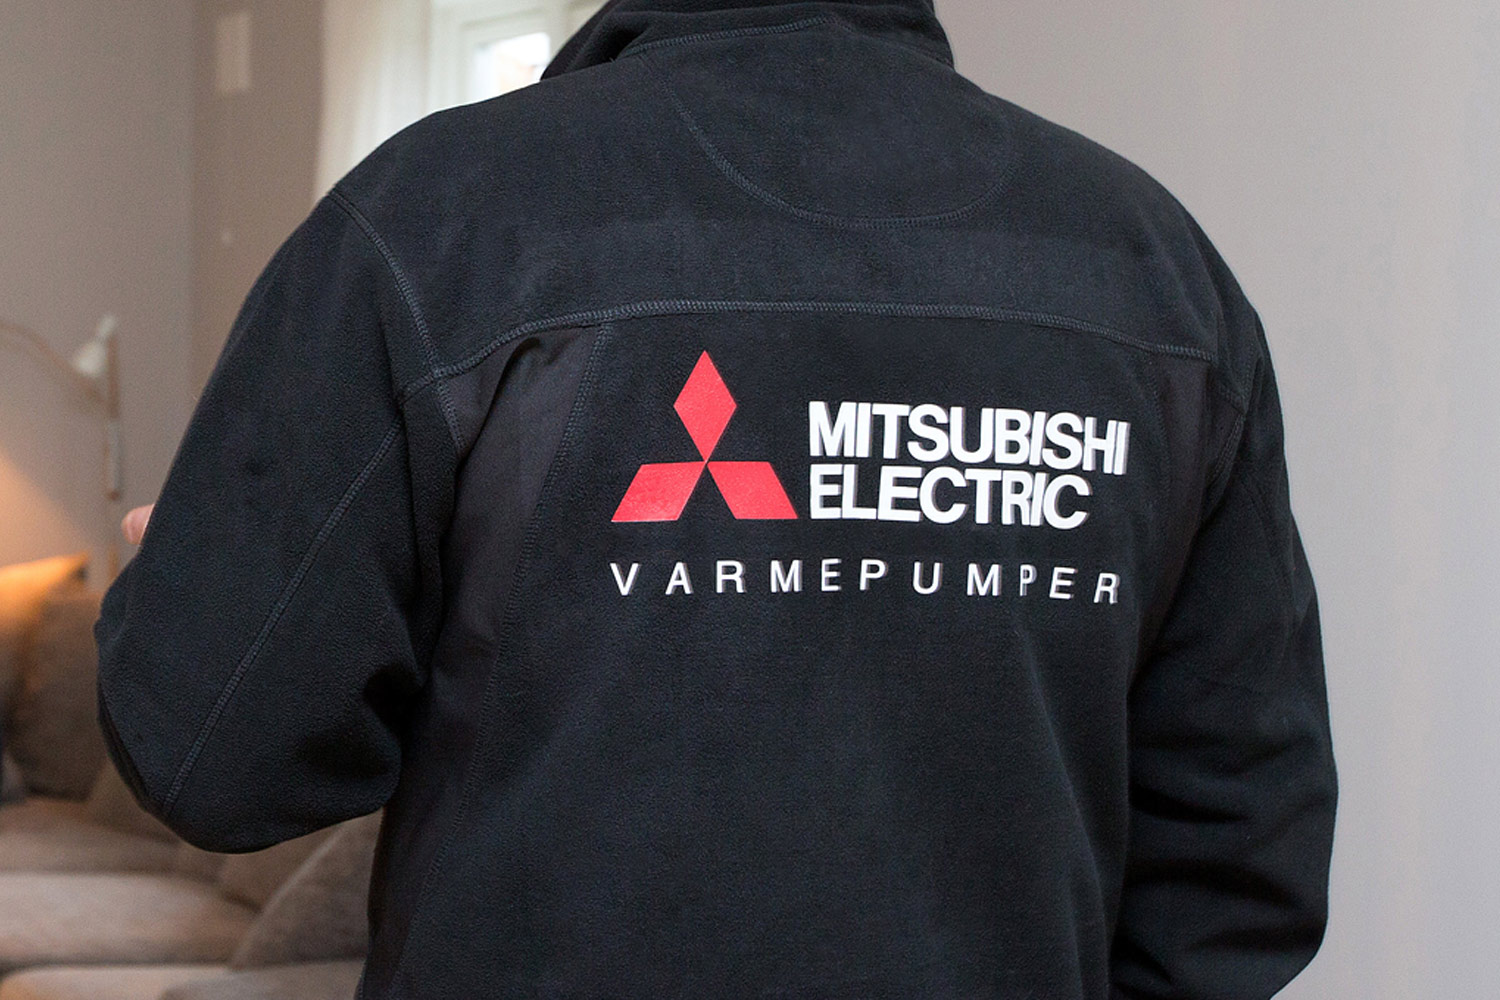 Mitsubishi Electric på ryggen til montør. Foto.